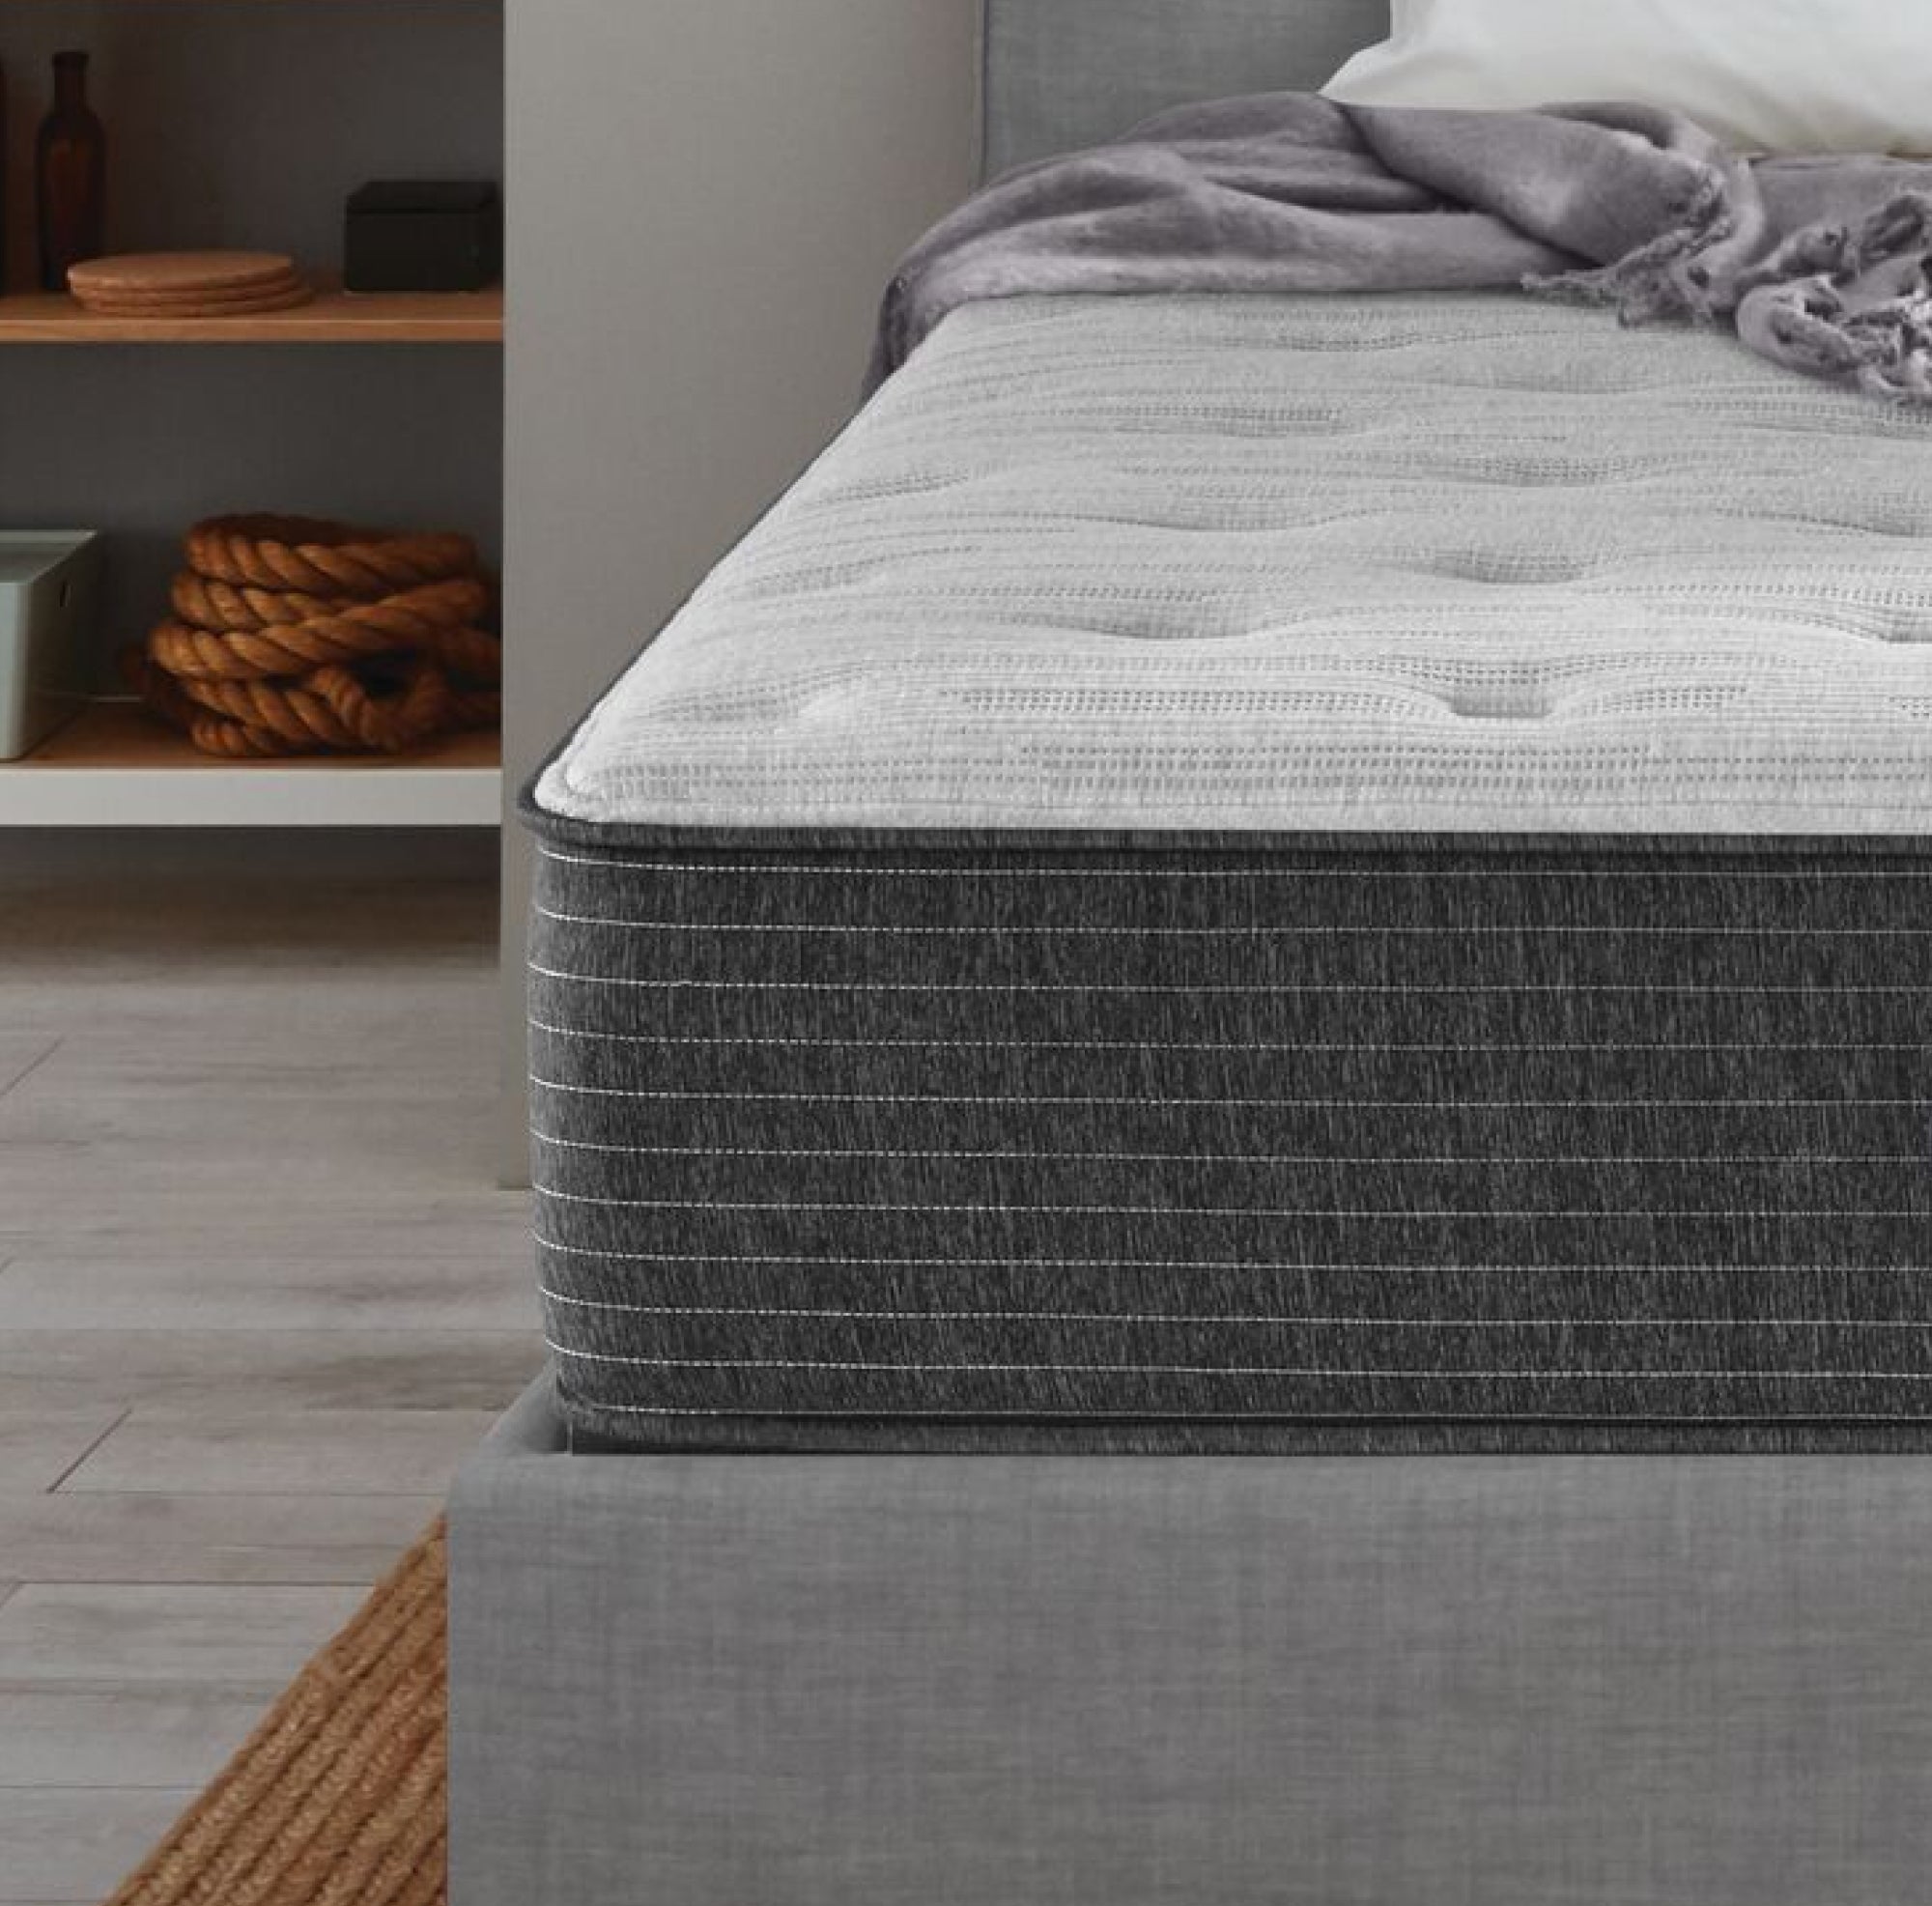 Corner view of the Beautyrest Select mattress ||feel: Medium